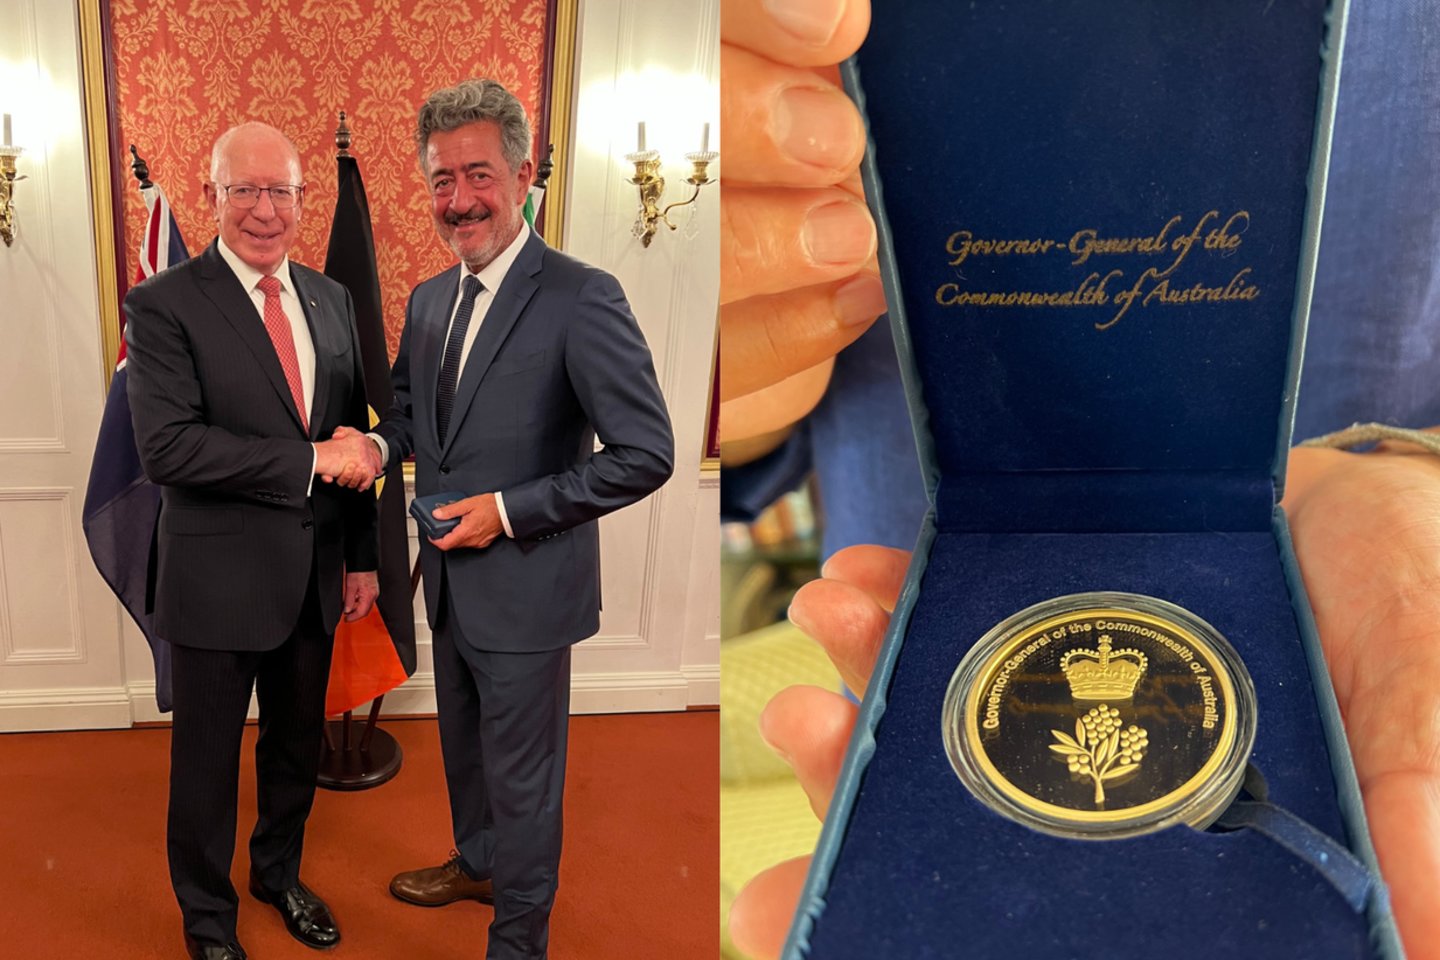 Australijos garbės konsului Lietuvoje Antonio Meschino 25-mečio sukaktis diplomatinėje tarnyboje buvo paženklinta garbingu apdovanojimu, kurį jam Varšuvoje įteikė Australijos generalgubernatorius.<br>Lrytas.lt koliažas.